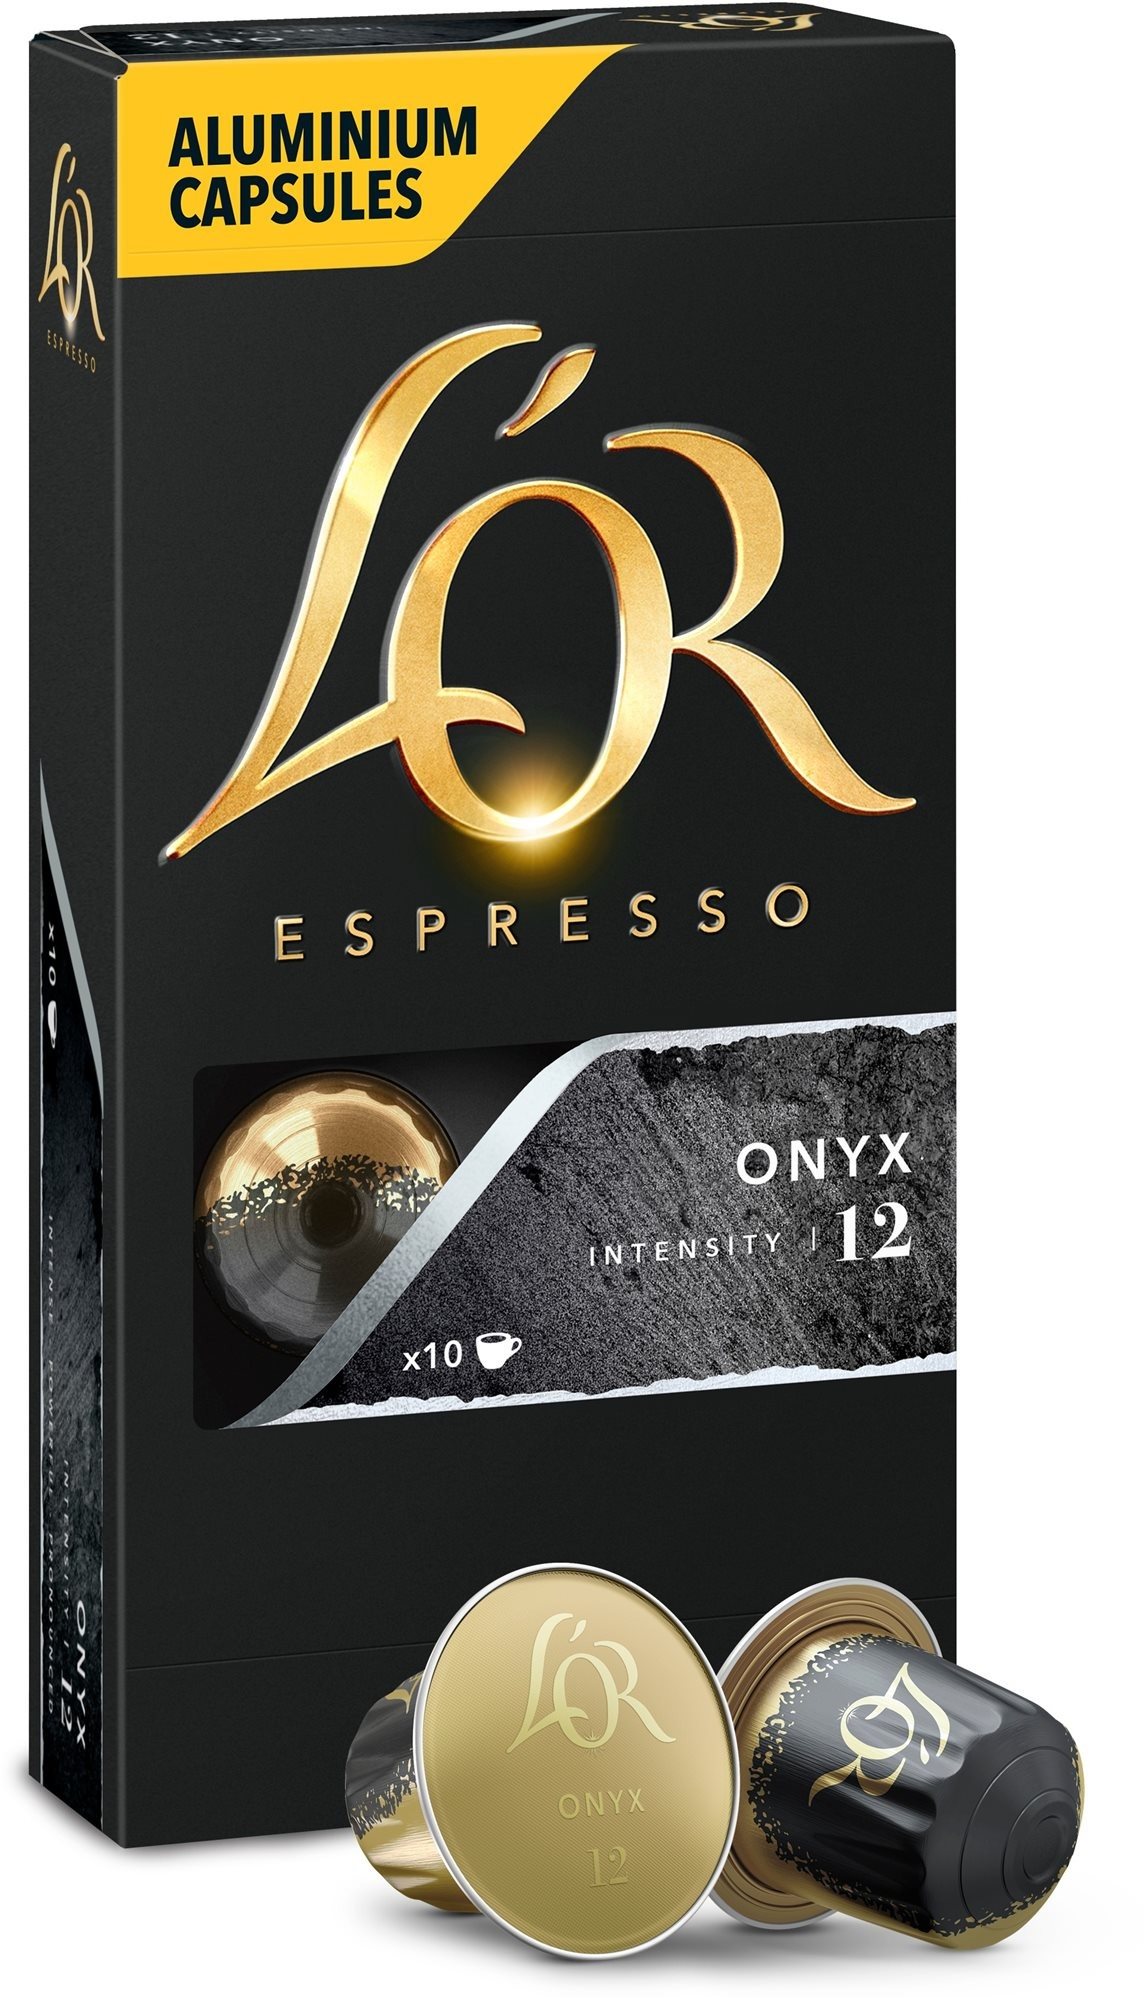 L'OR Espresso Onyx 10db, alumínium